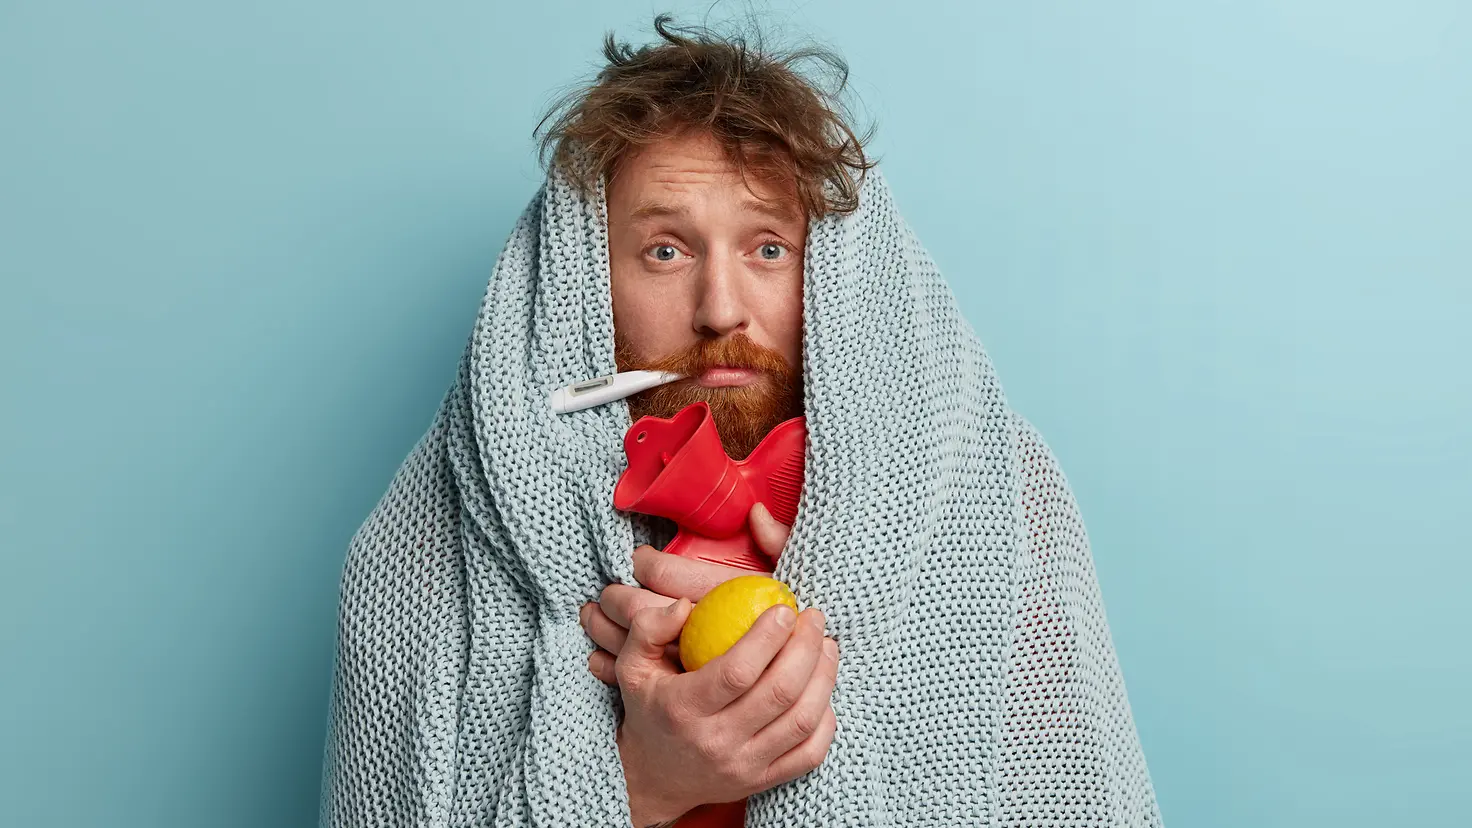 Zu sehen ist ein Mann, eingewickelt in eine Decke und mit Fieberthermometer, Wärmflasche und einer Zitrone